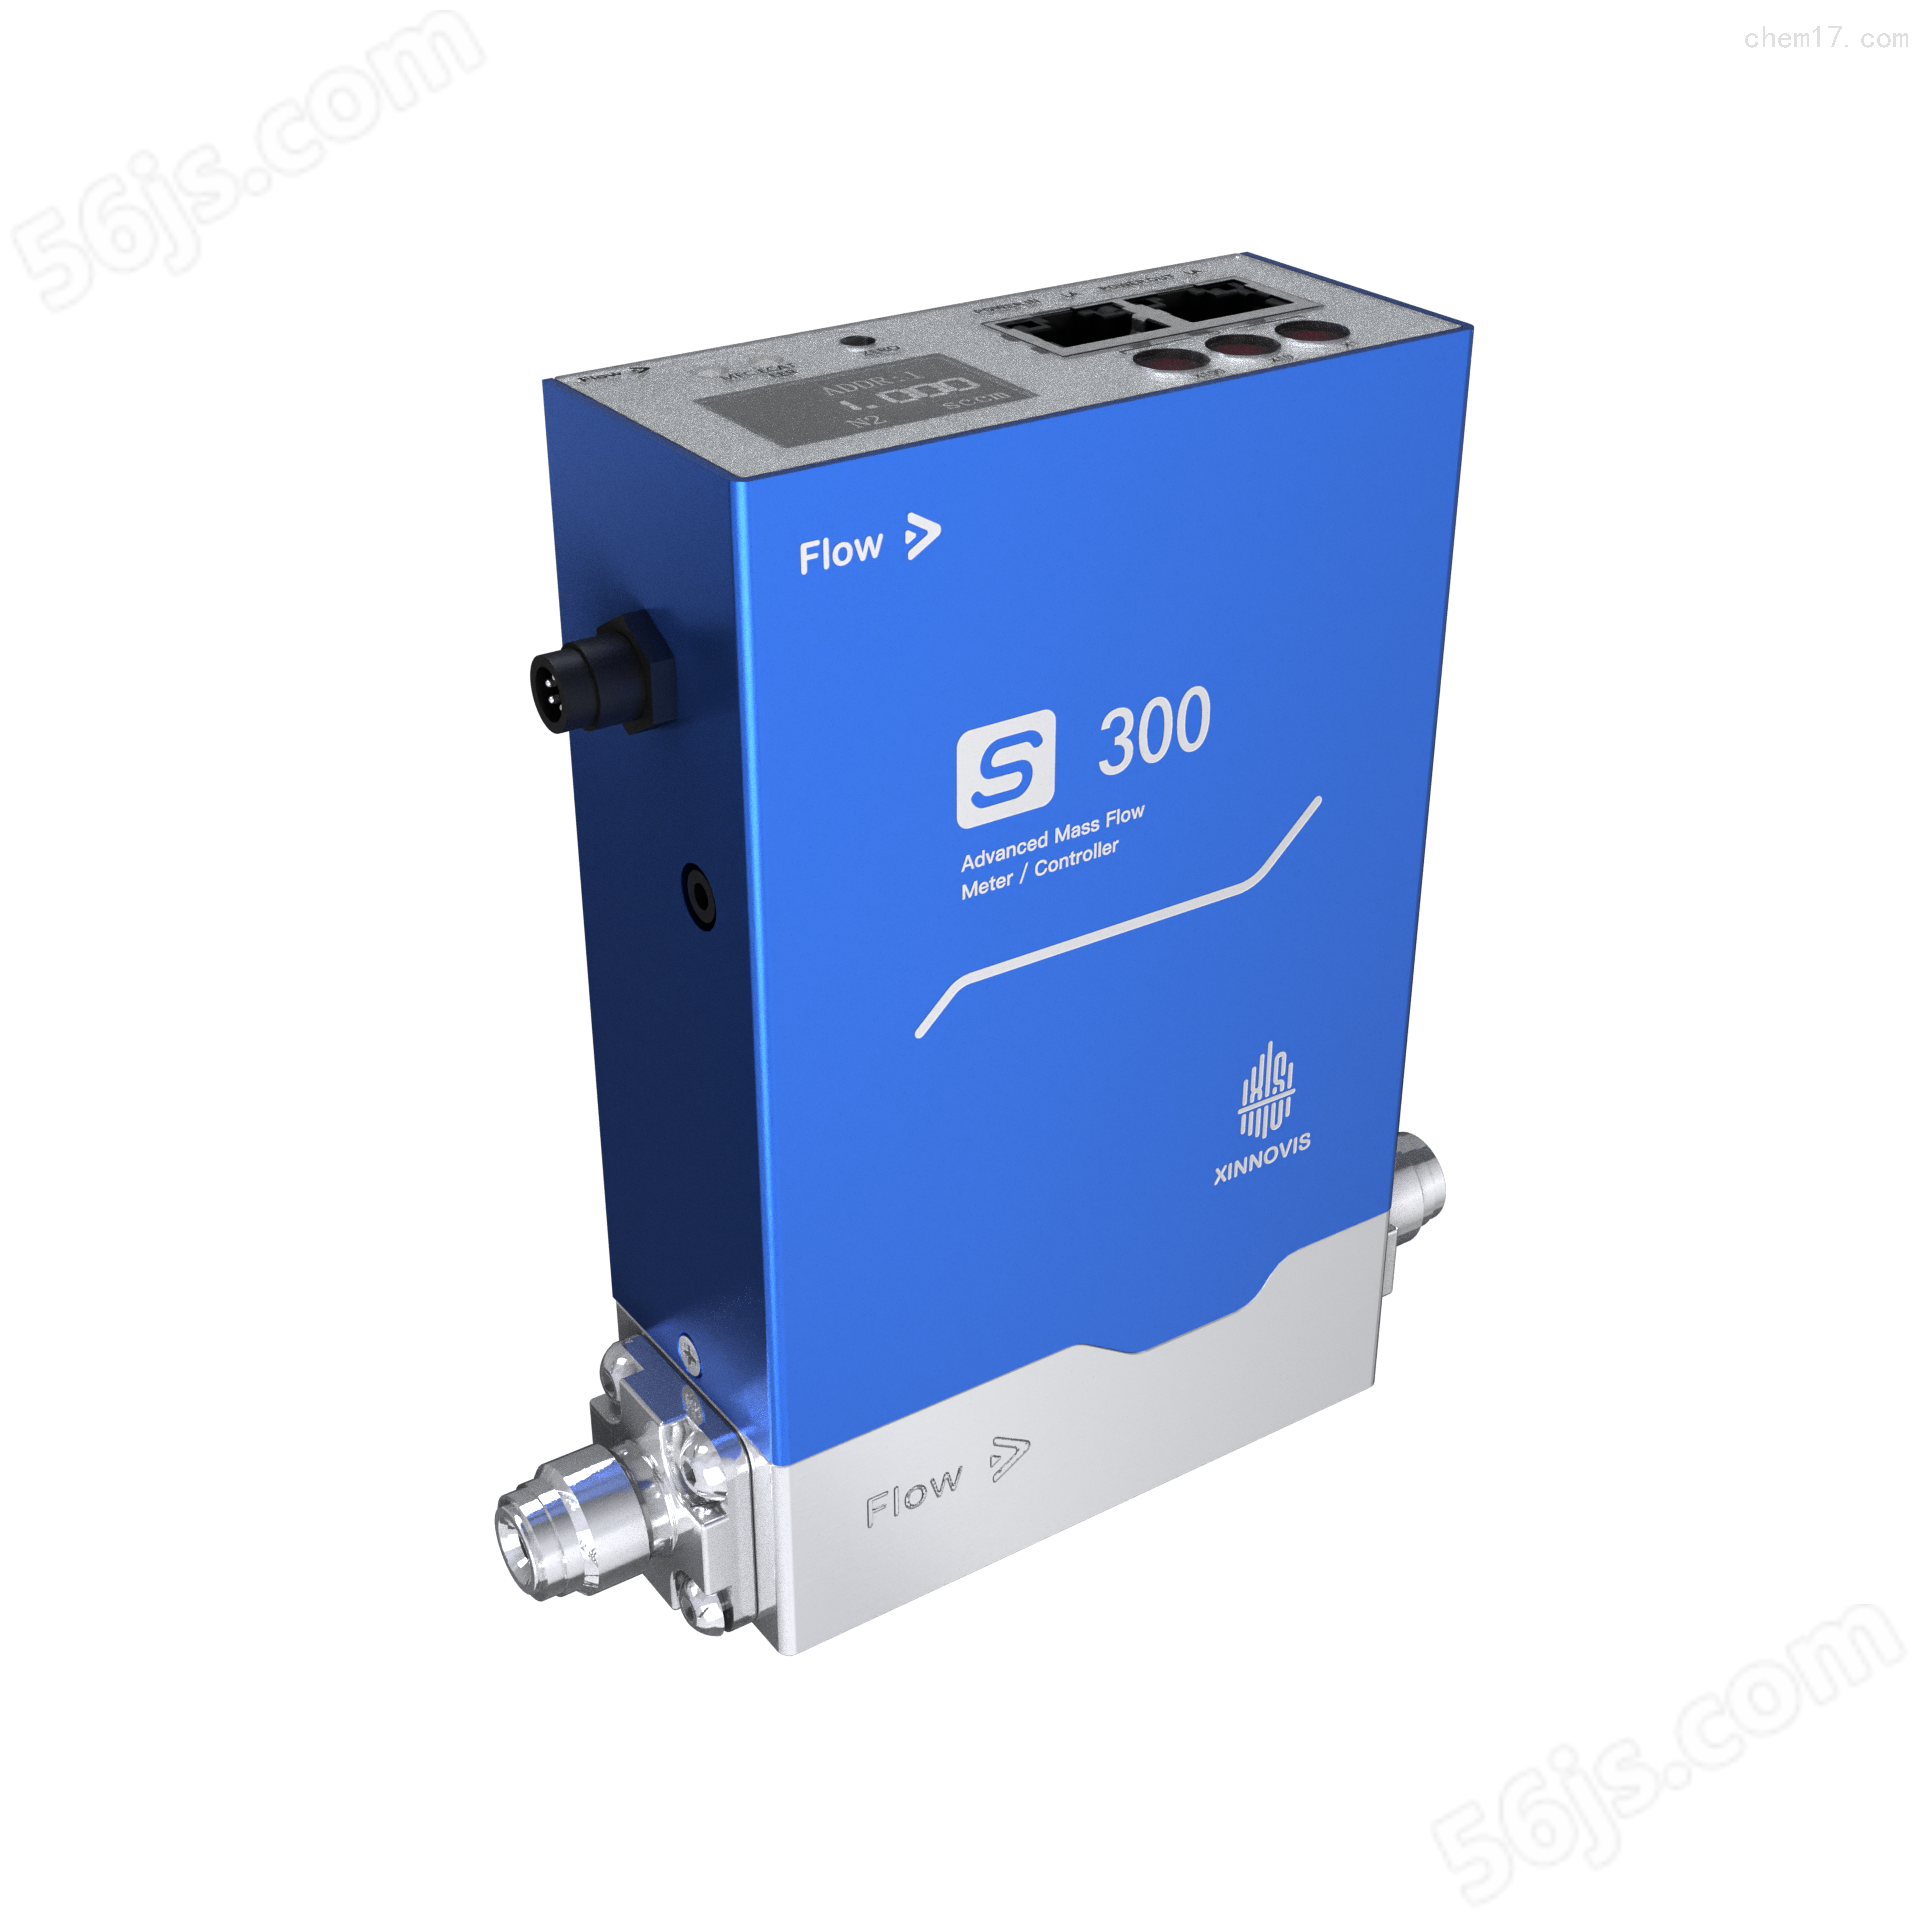 供应气体质量流量控制器s-300生产